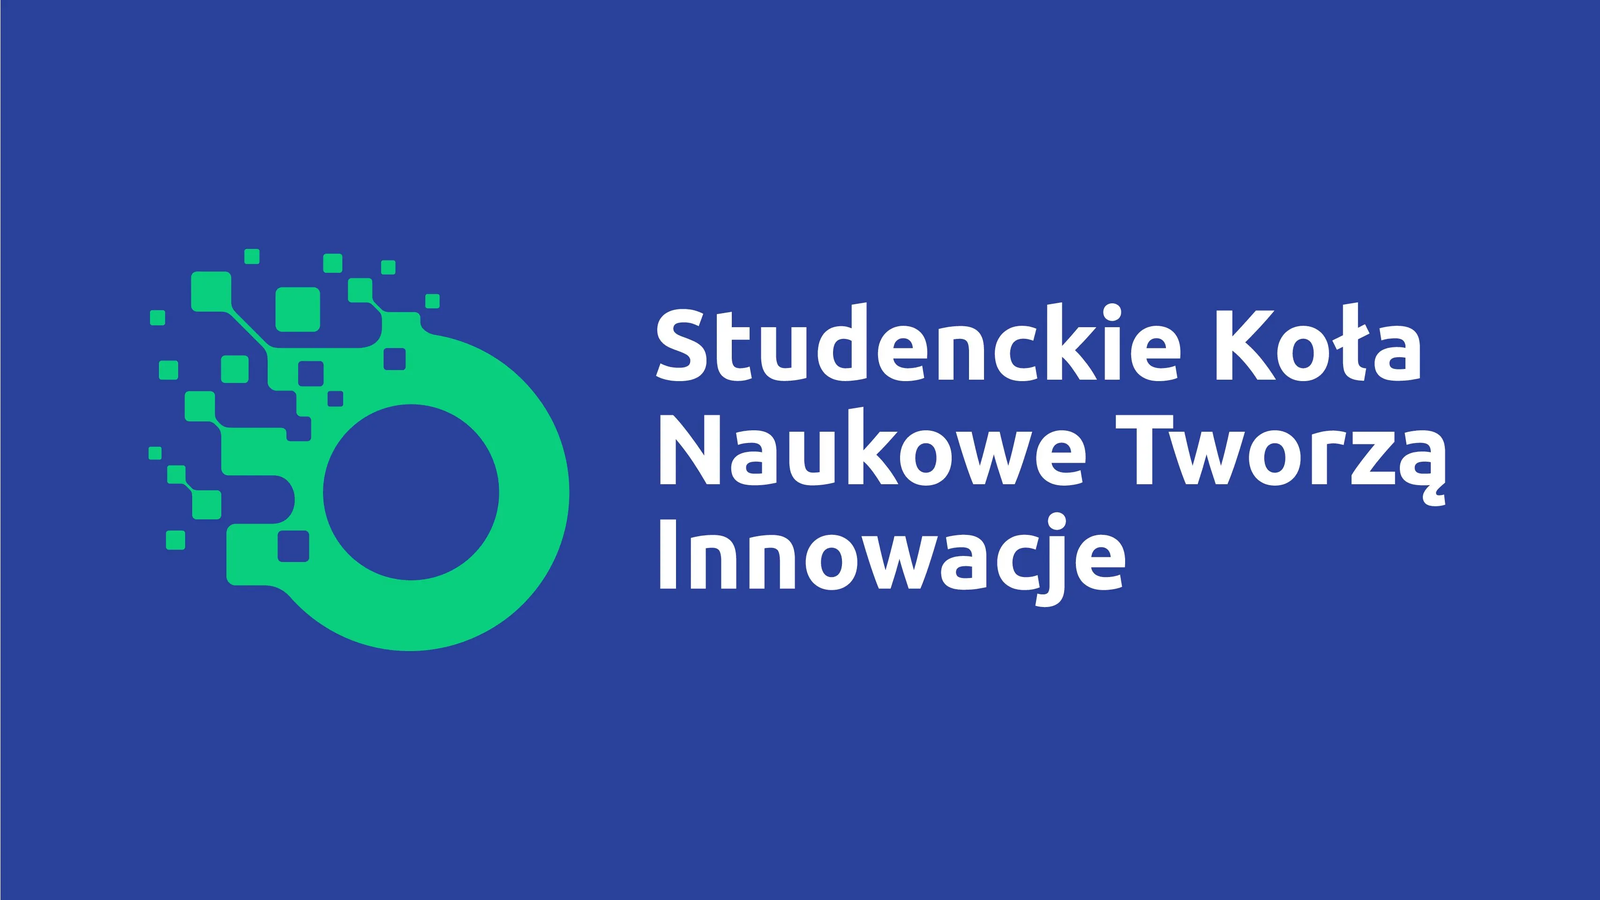 studenckie_kola_logo_cmyk-pdf-1.jpg